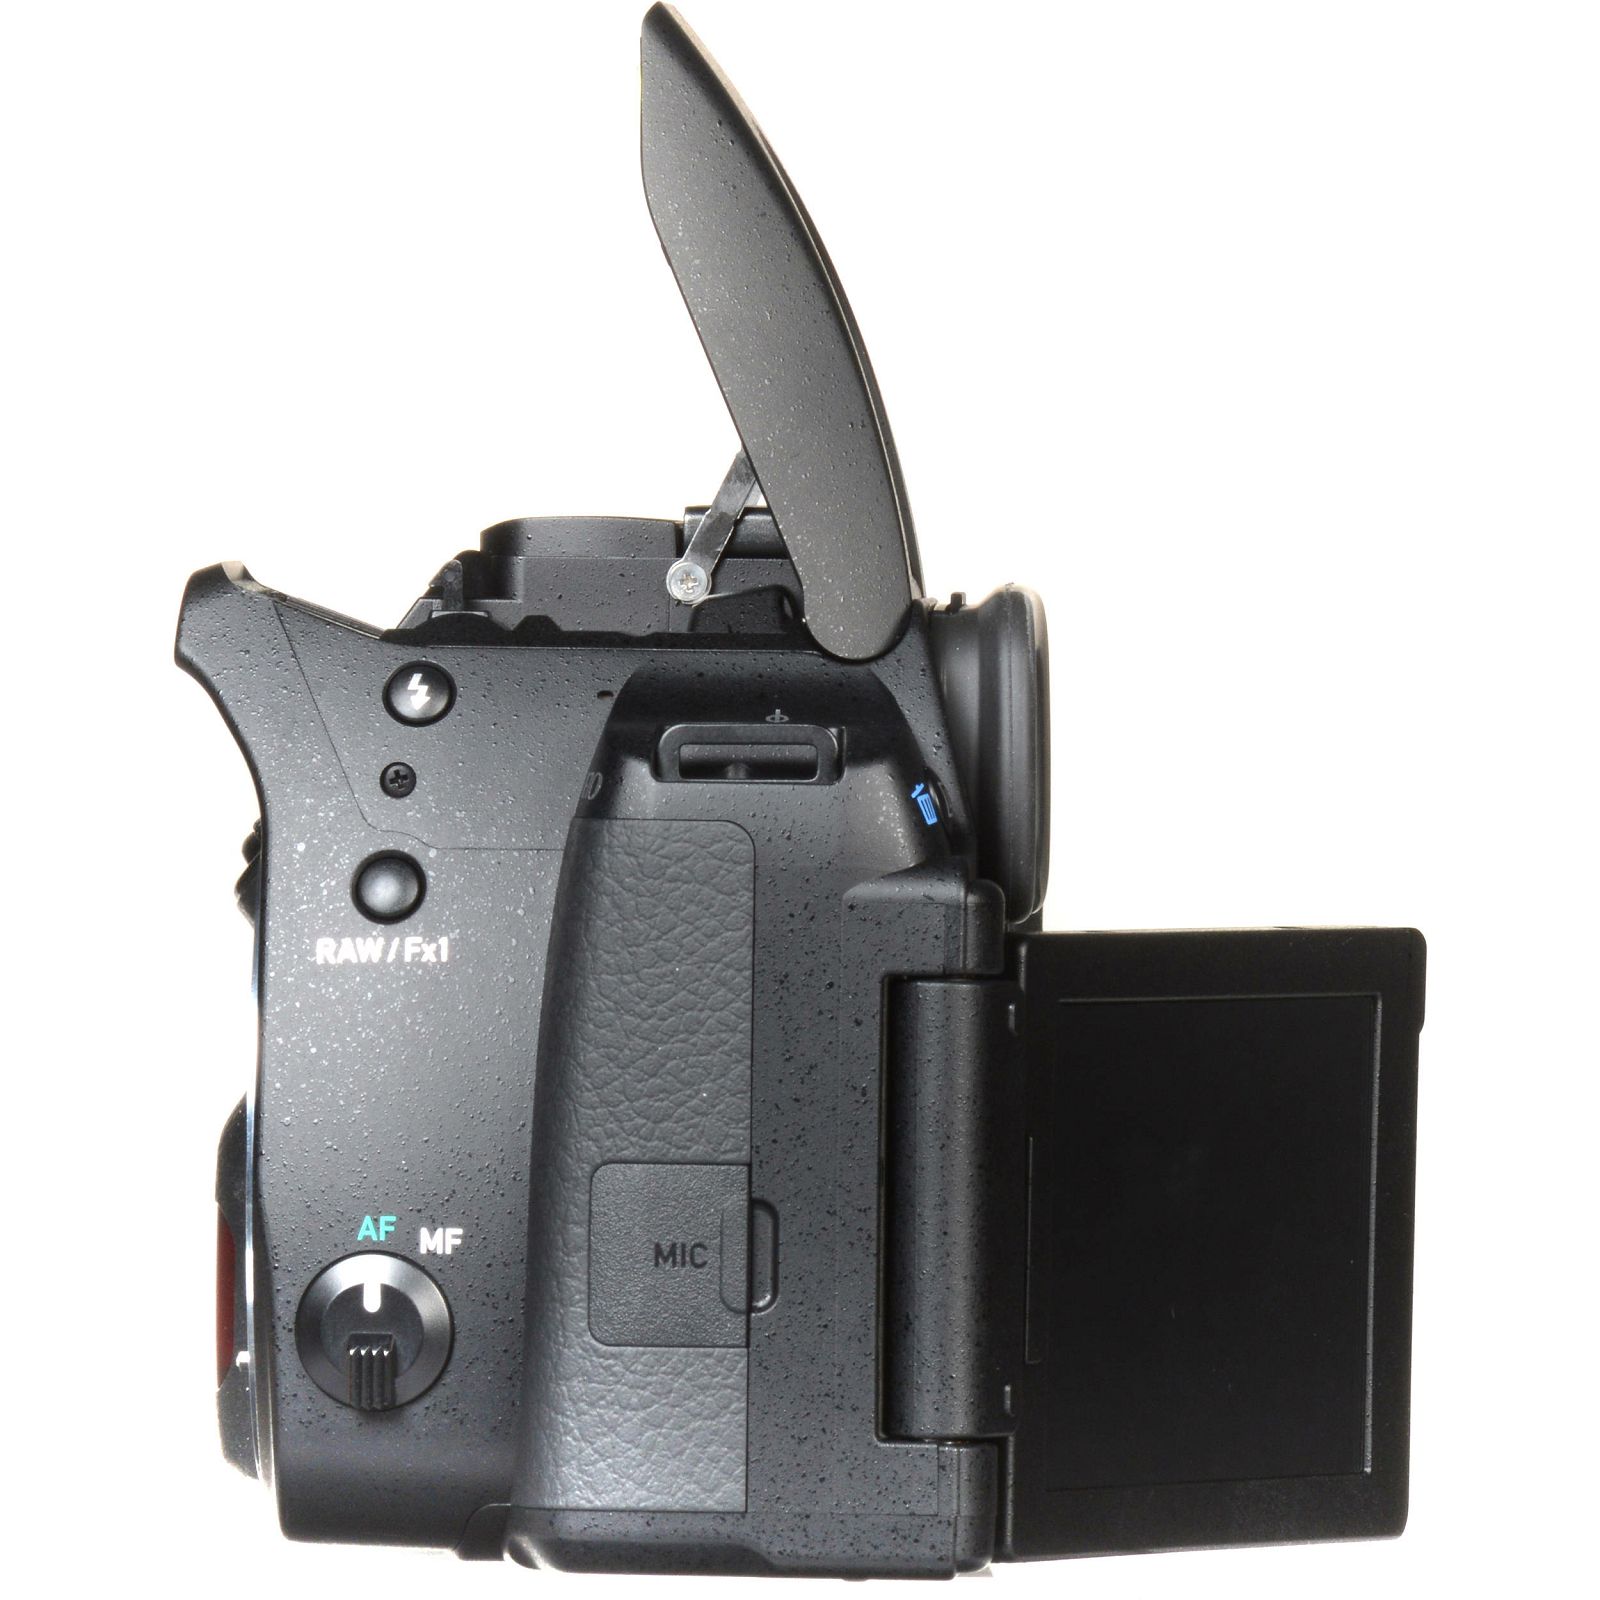 Pentax K-70 + 18-50mm DC WR RE + 50-200mm ED WR Black KIT DSLR Crni Digitalni fotoaparat 18-50/50-200 EU + 18-50 i SMC DA 50-200 f/4-5.6 f/4.0-5.6 f4-5.6 4-5.6 (16295)